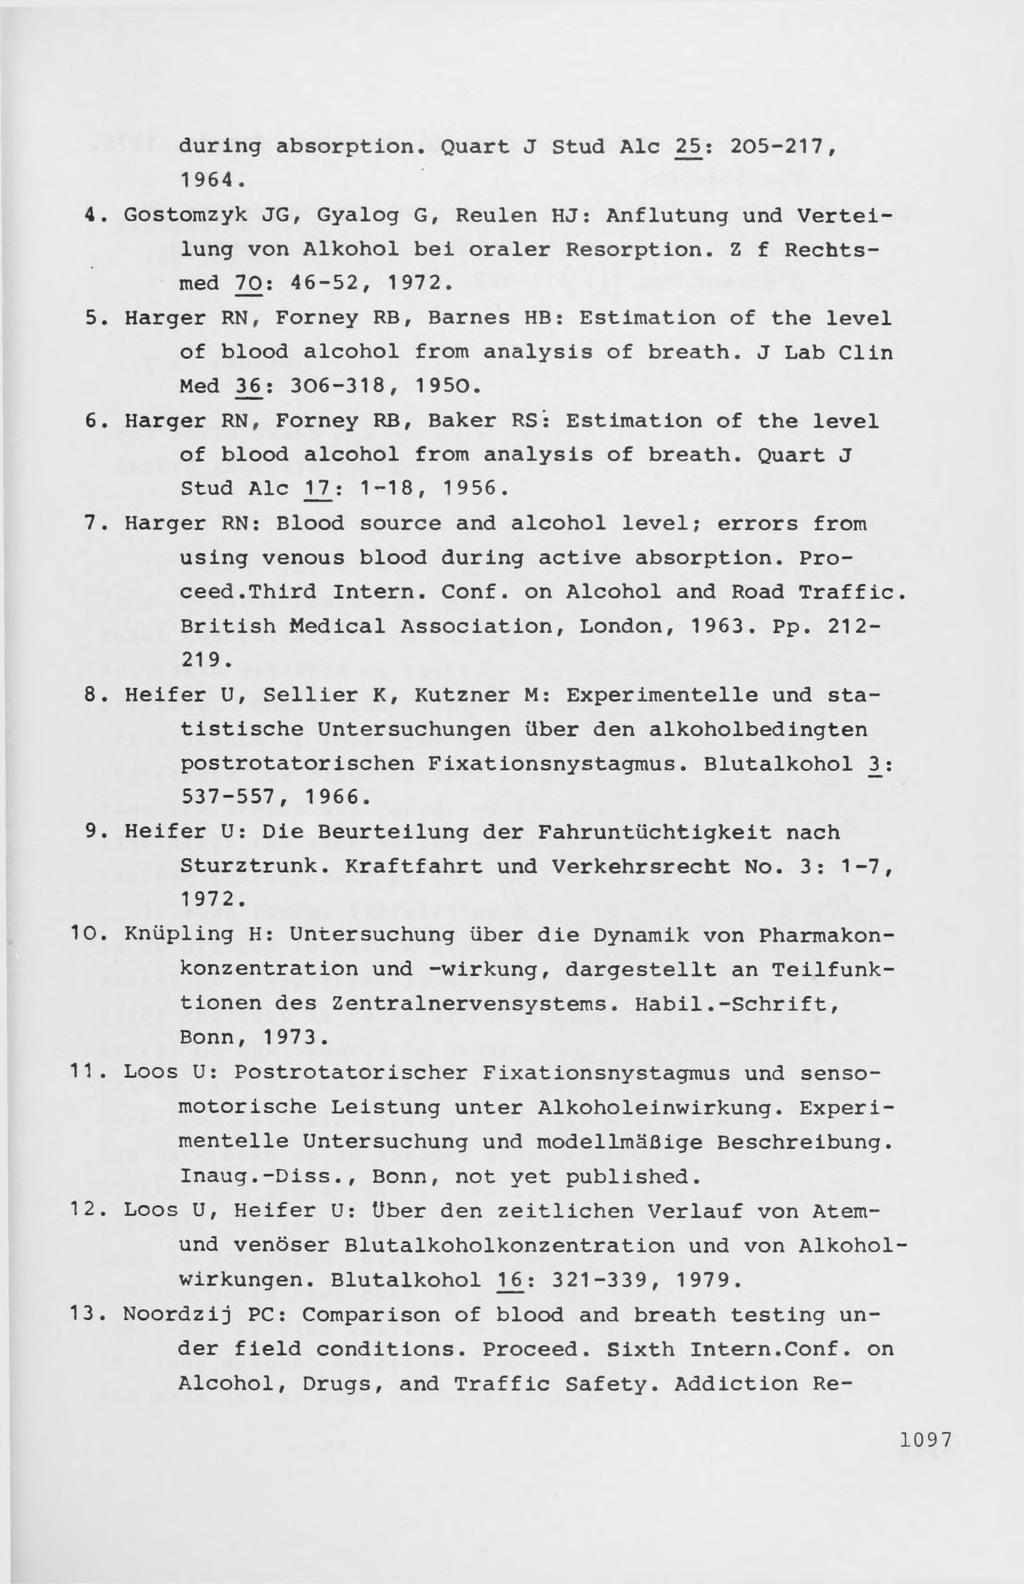 during absorption. Quart J Stud Ale 2J5: 205-217, 1964. Gostomzyk JG, Gyalog G, Reulen H J : Anflutung und Verteilung von Alkohol bei oraler Resorption. Z f Rechtsmed 70: 46-52, 1972.